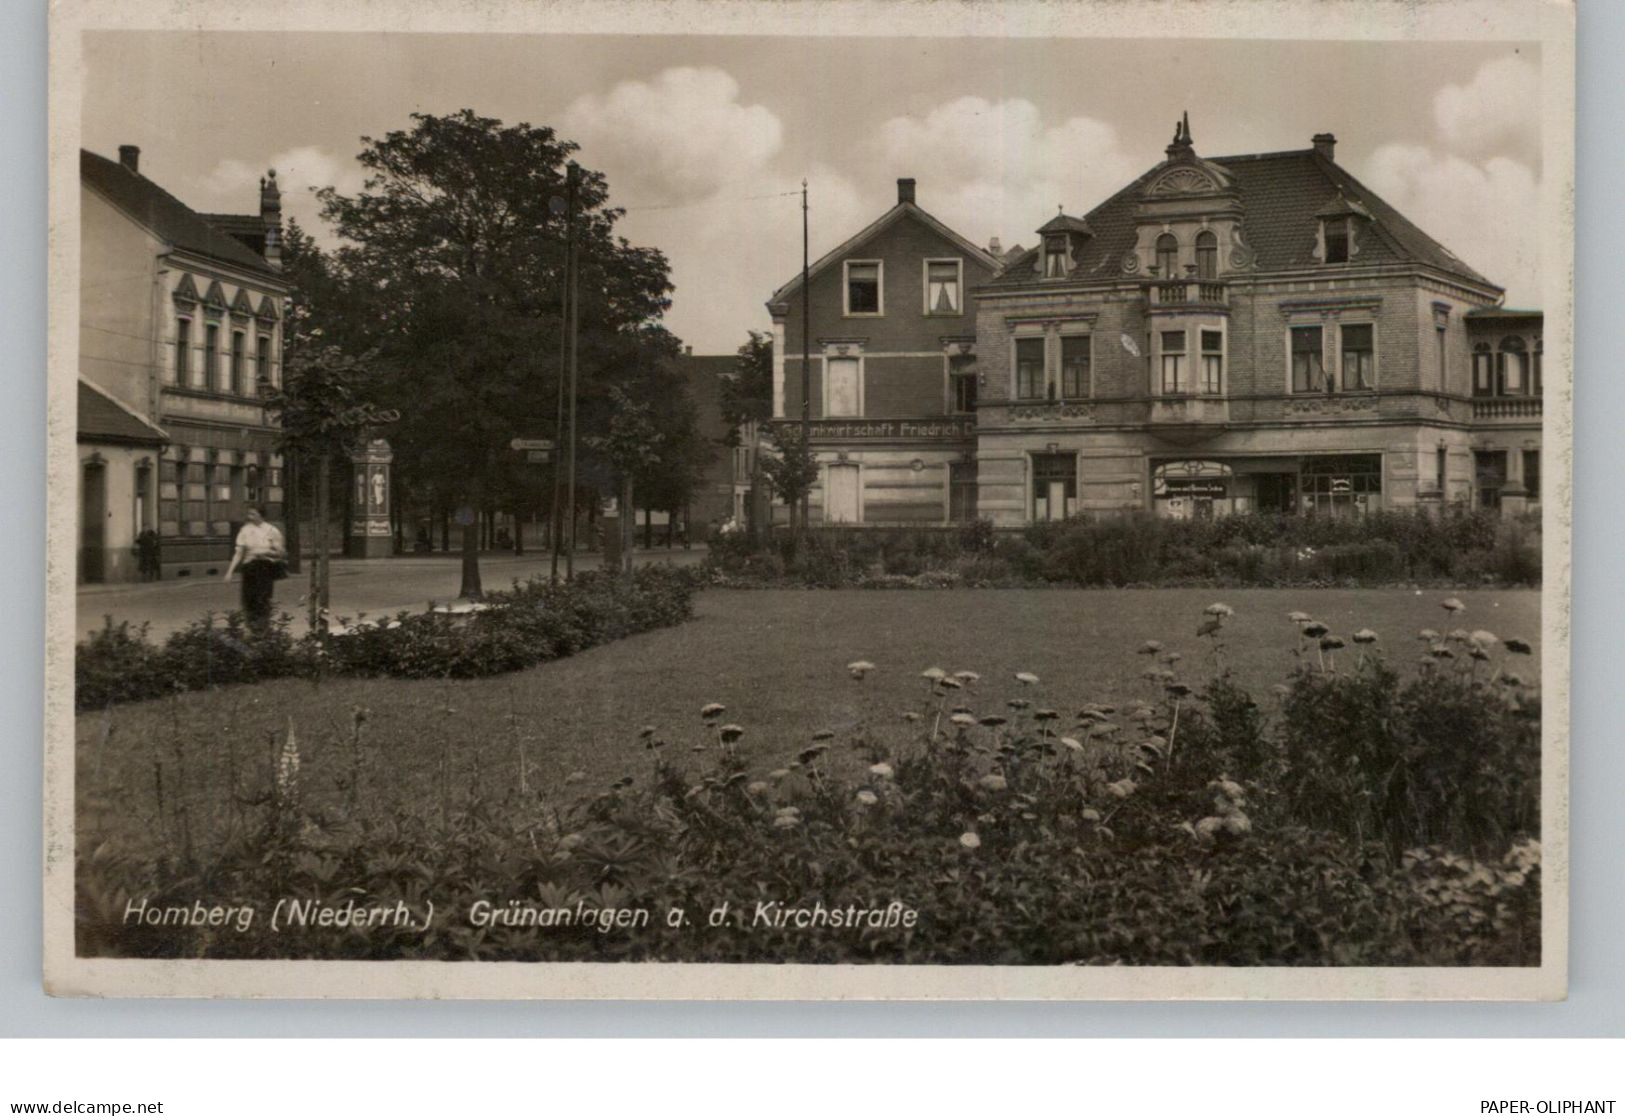 4100 DUISBURG - HOMBERG, Kirchstrasse, Grünanlegen, 1935 - Duisburg